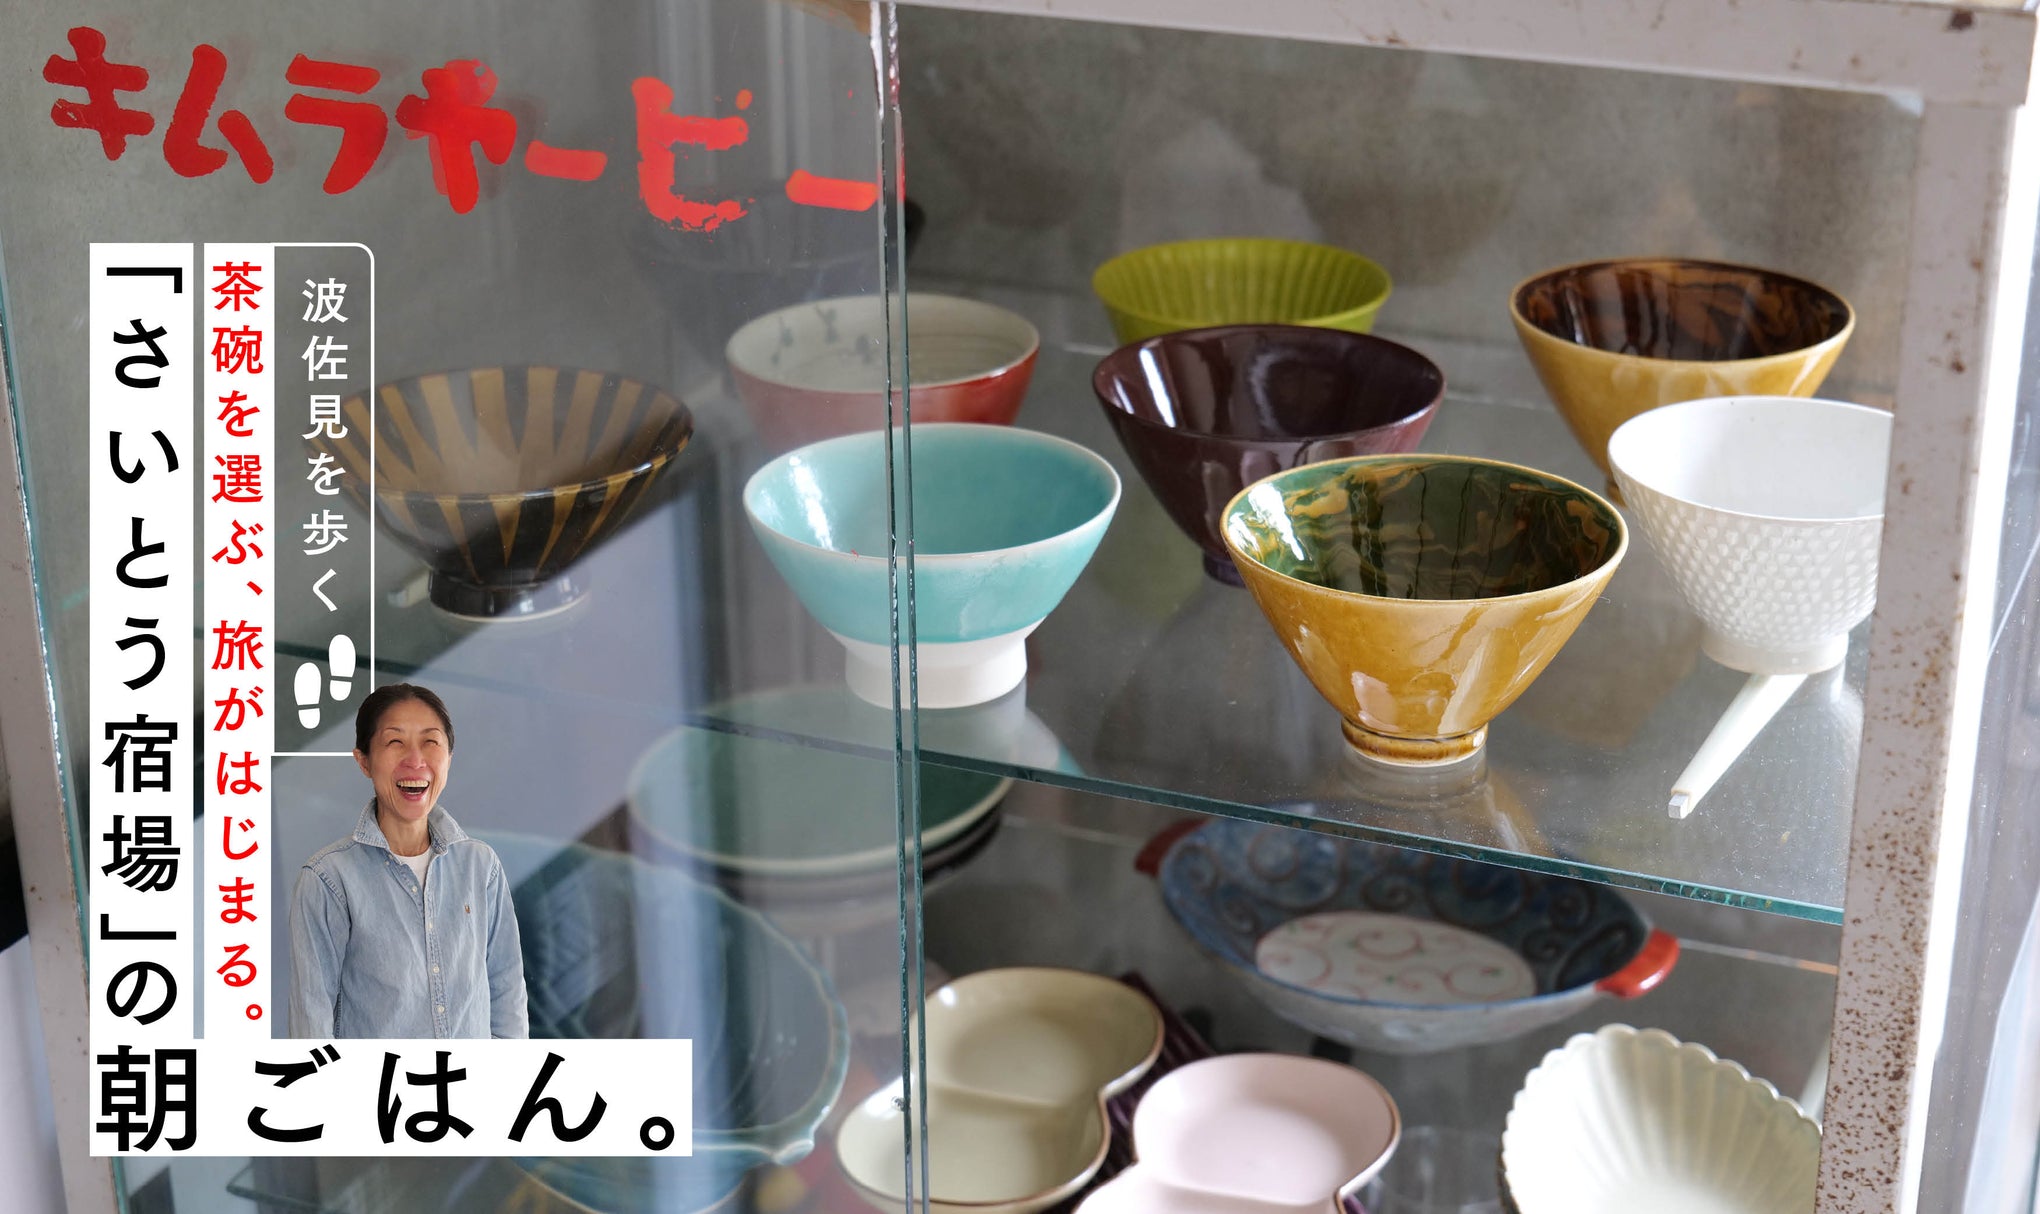 茶碗を選ぶ、旅がはじまる。長崎・大村湾を一望できる「さいとう宿場」の朝ごはん。